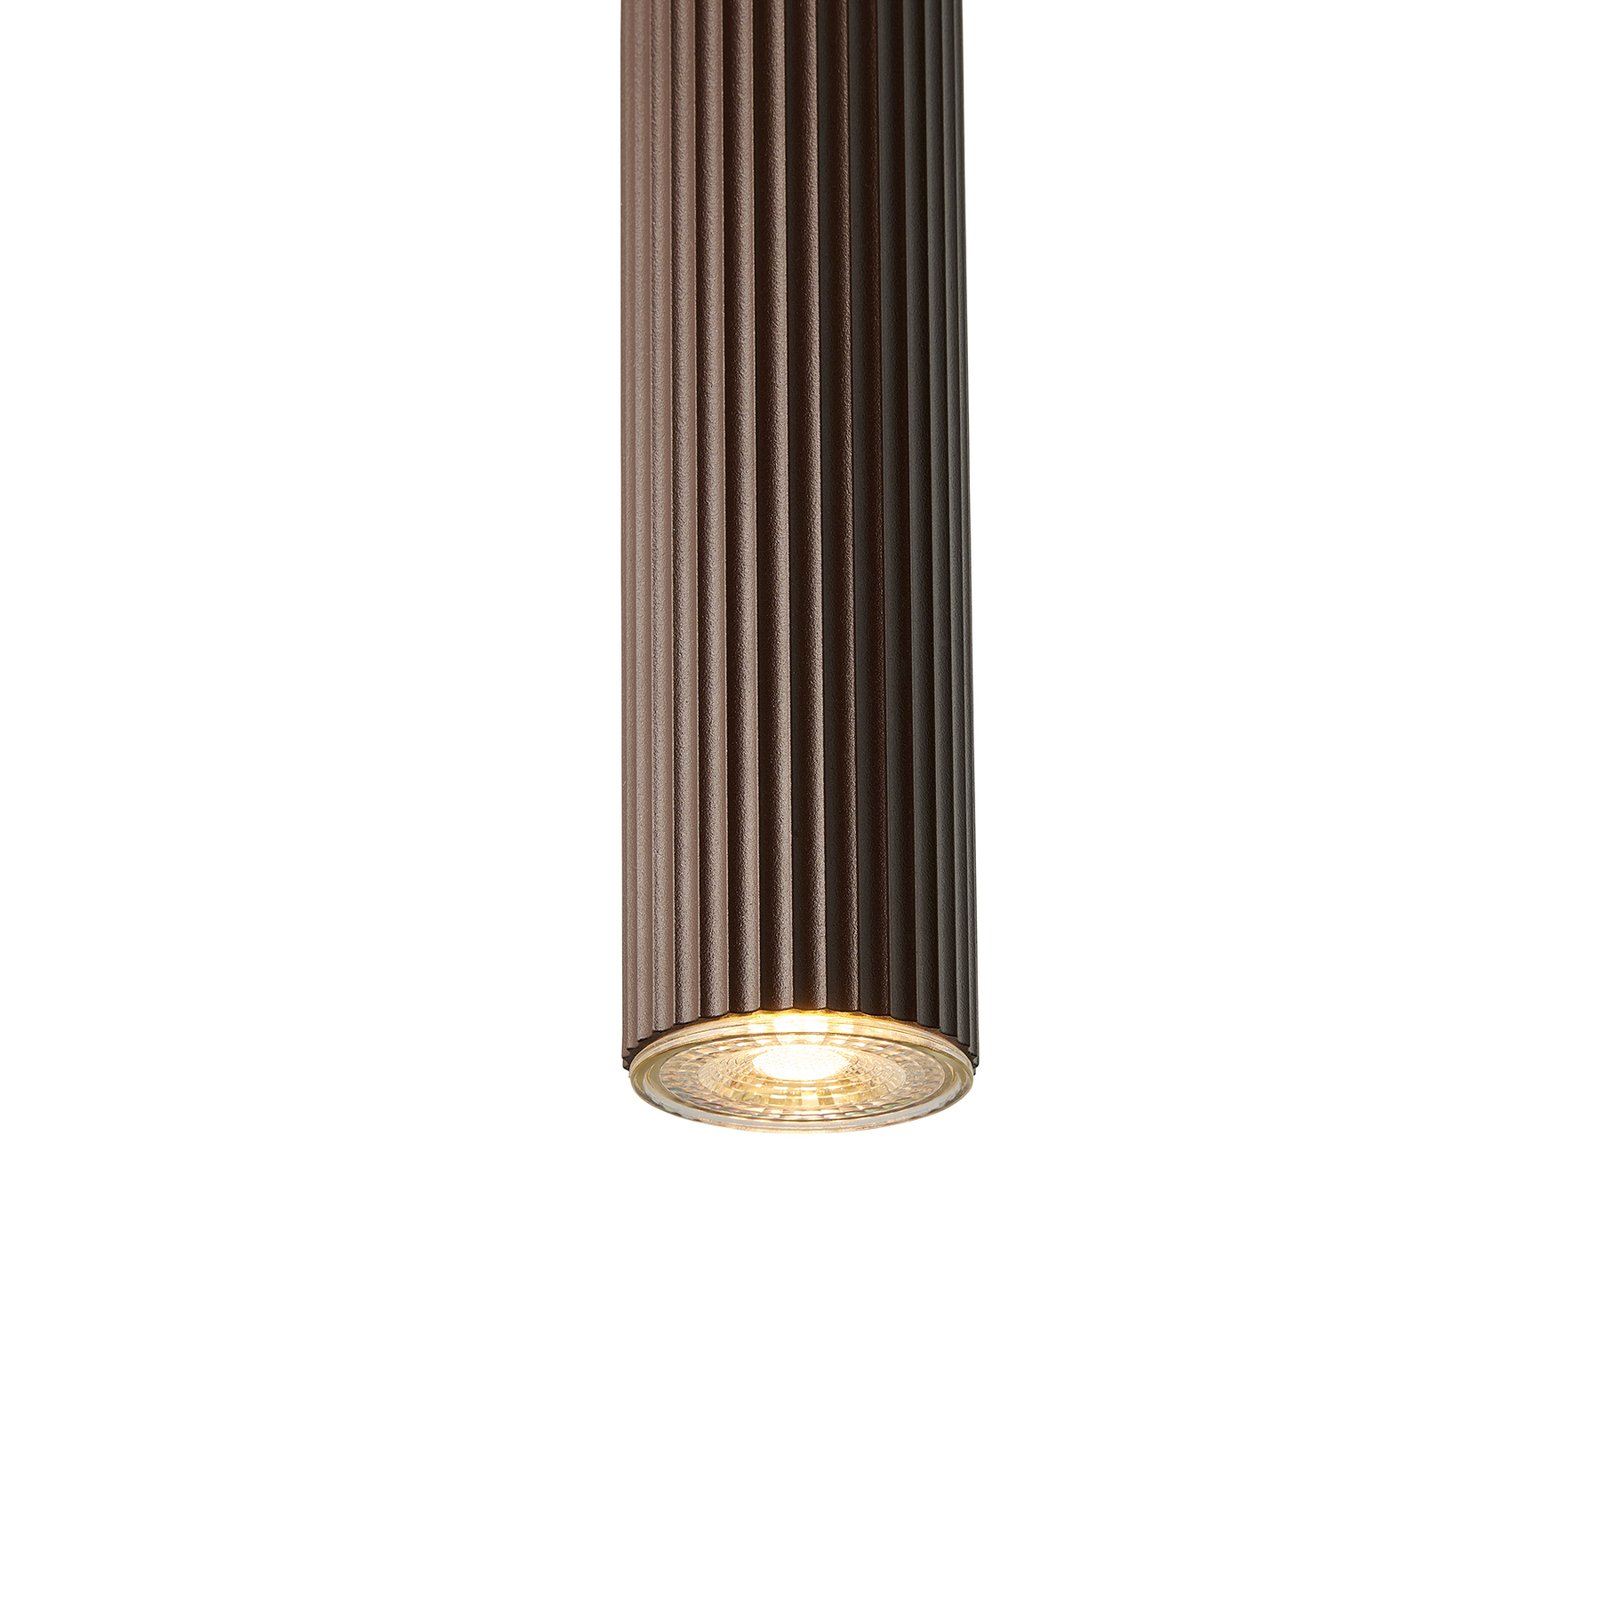 Lampa wisząca Vico, metalowy klosz, 1-punktowa, brązowy metalik